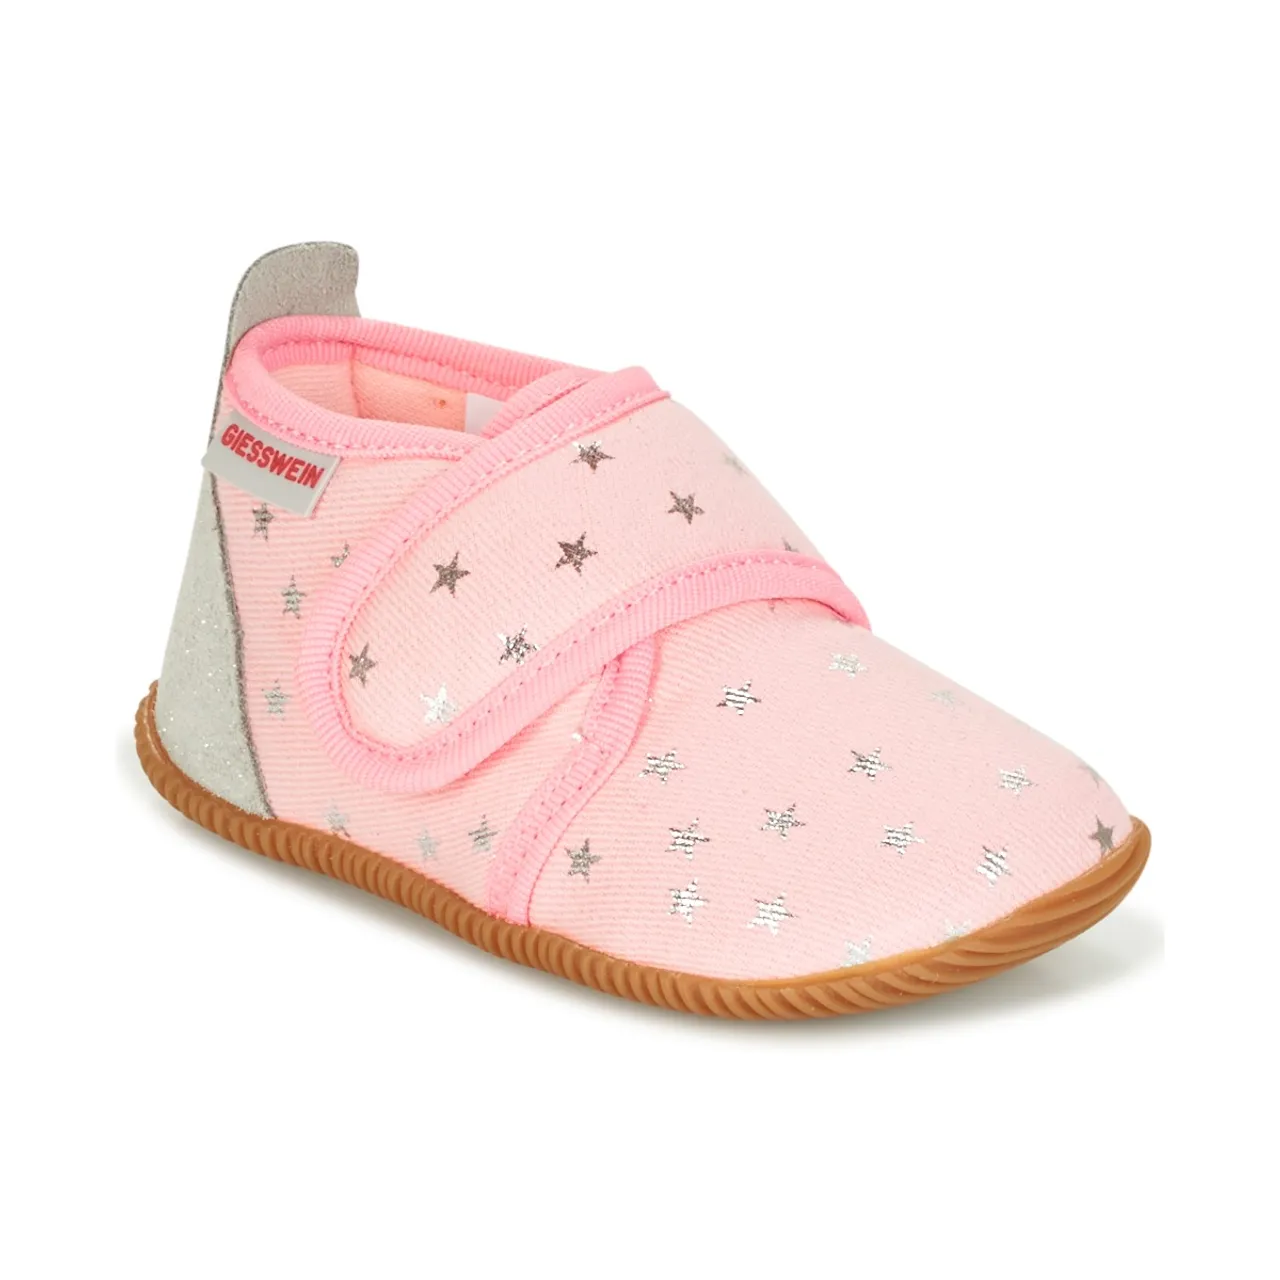 Giesswein  SALSACH  girls's Children's Slippers in Pink